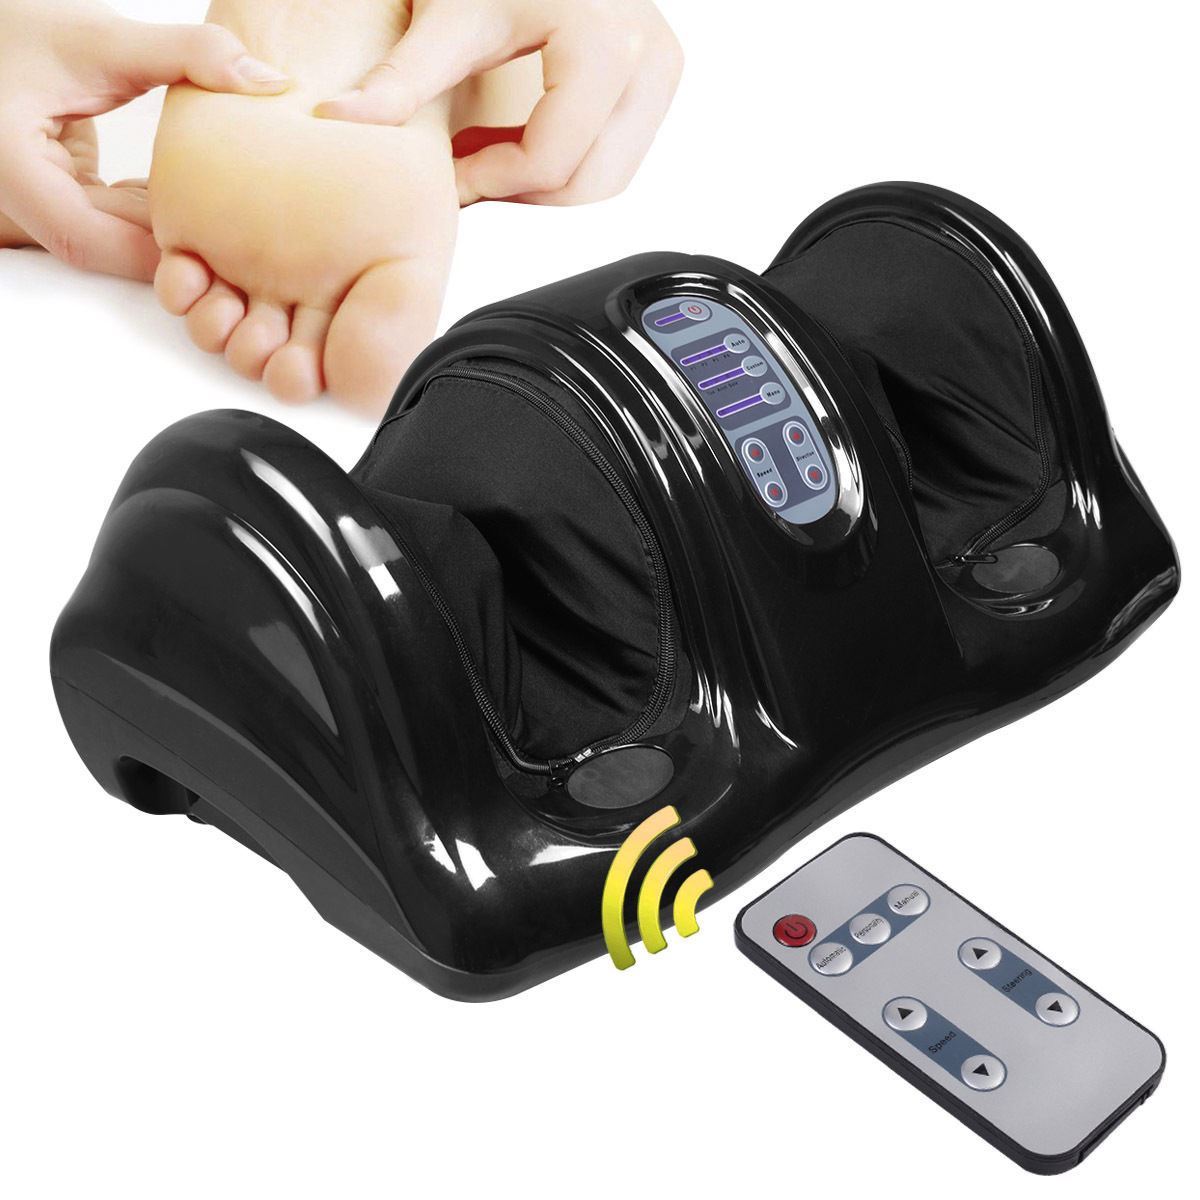 Cb16592 Foot Massager Shiatsu With Remote, Black